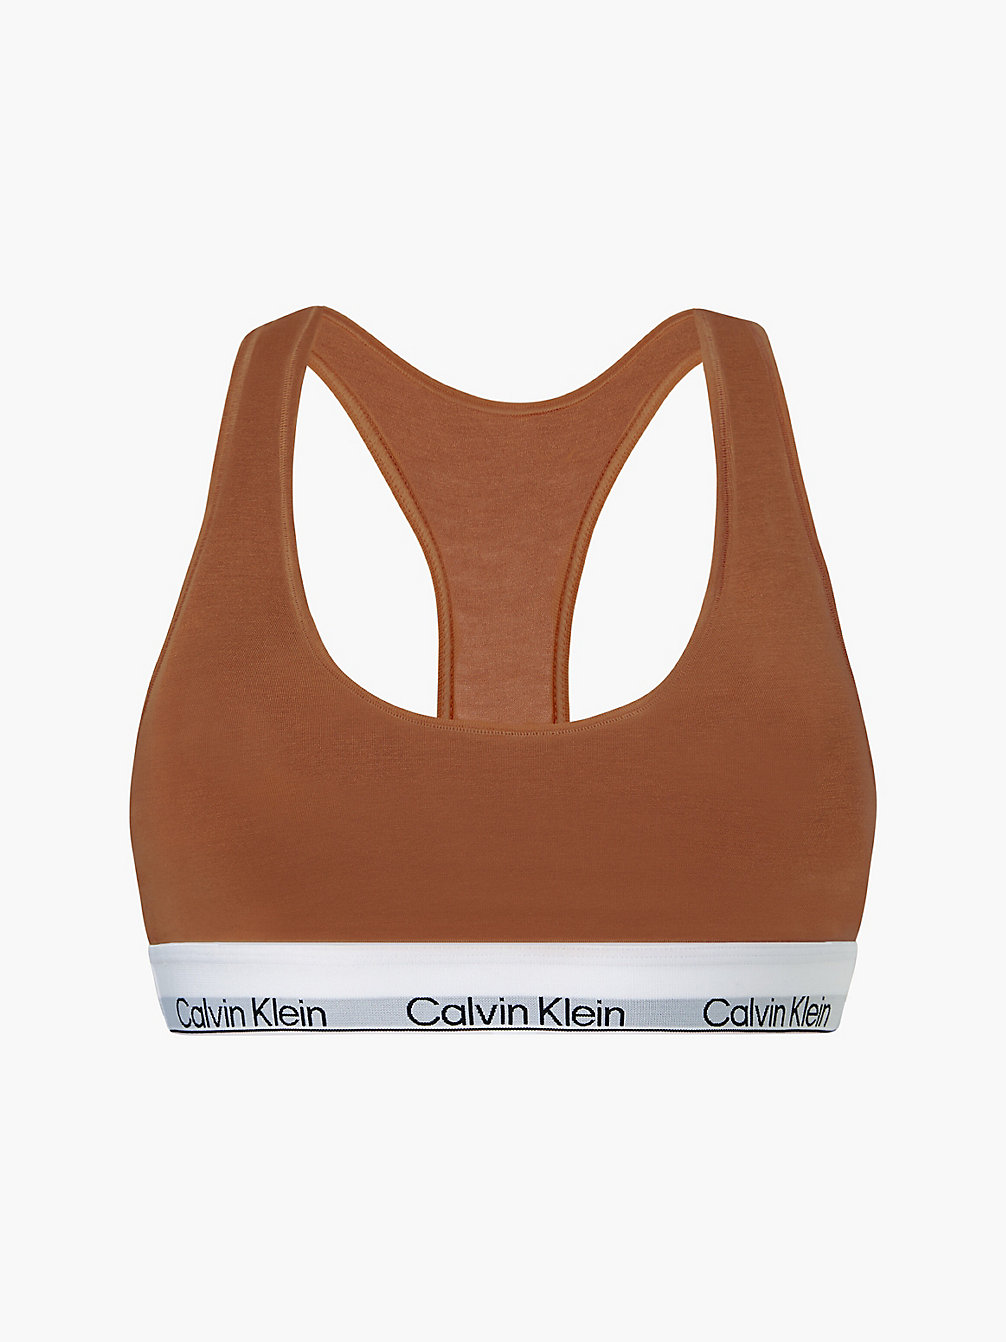 WARM BRONZE Bralette – Modern Cotton undefined Damen Calvin Klein